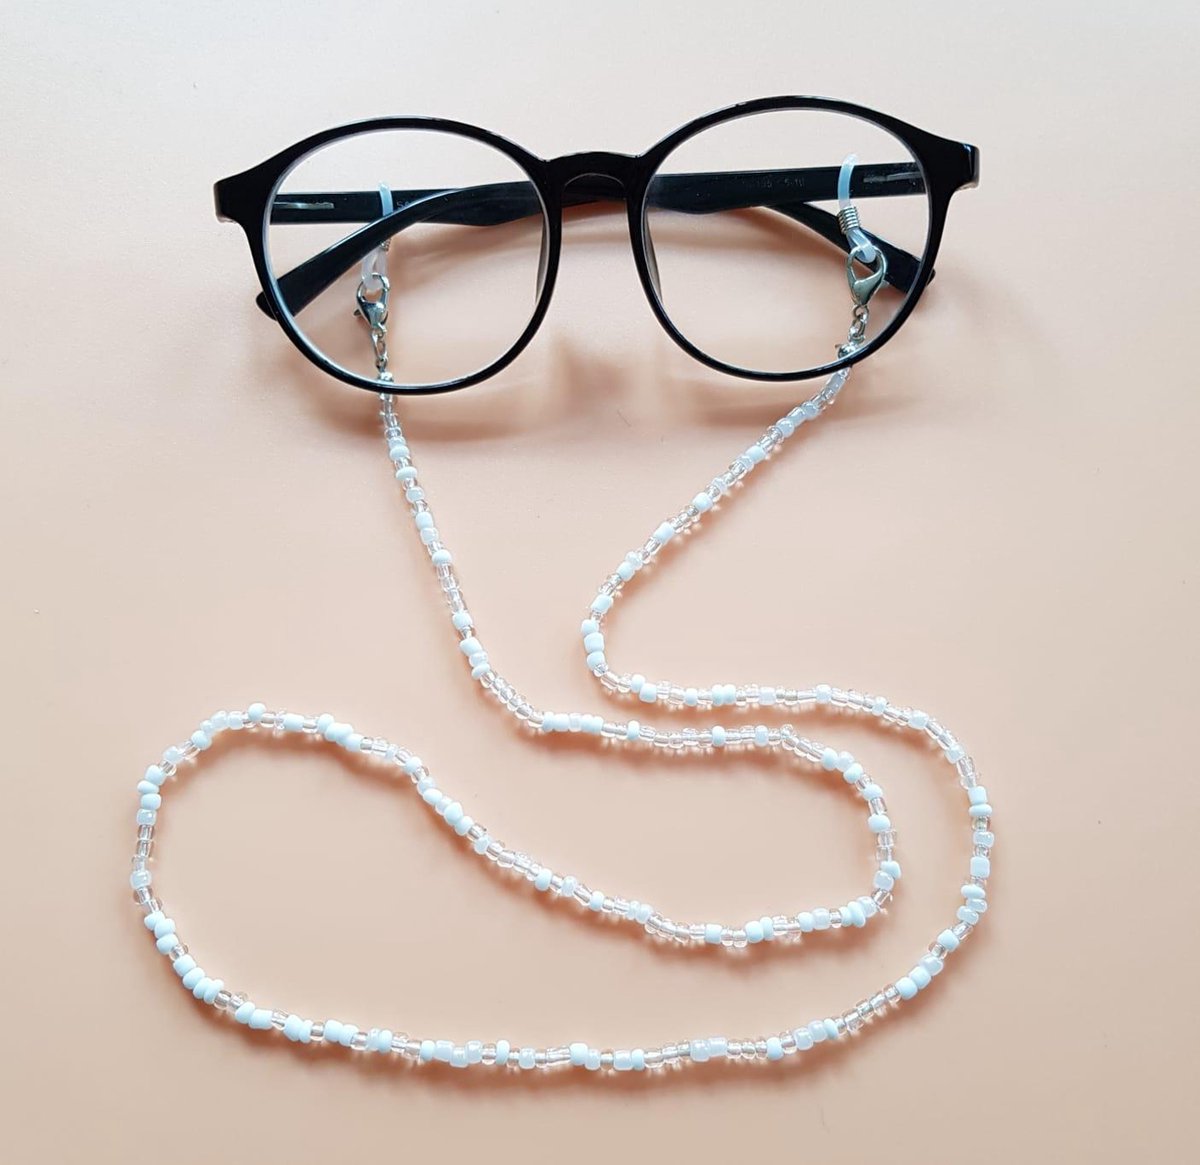 2 Pièces chaîne de lunettes Lunettes de soleil perles cordon tour de cou Retenue Bracelet Or et Argent Taille: Longueur: env. 77 cm / 30,3 pouces 